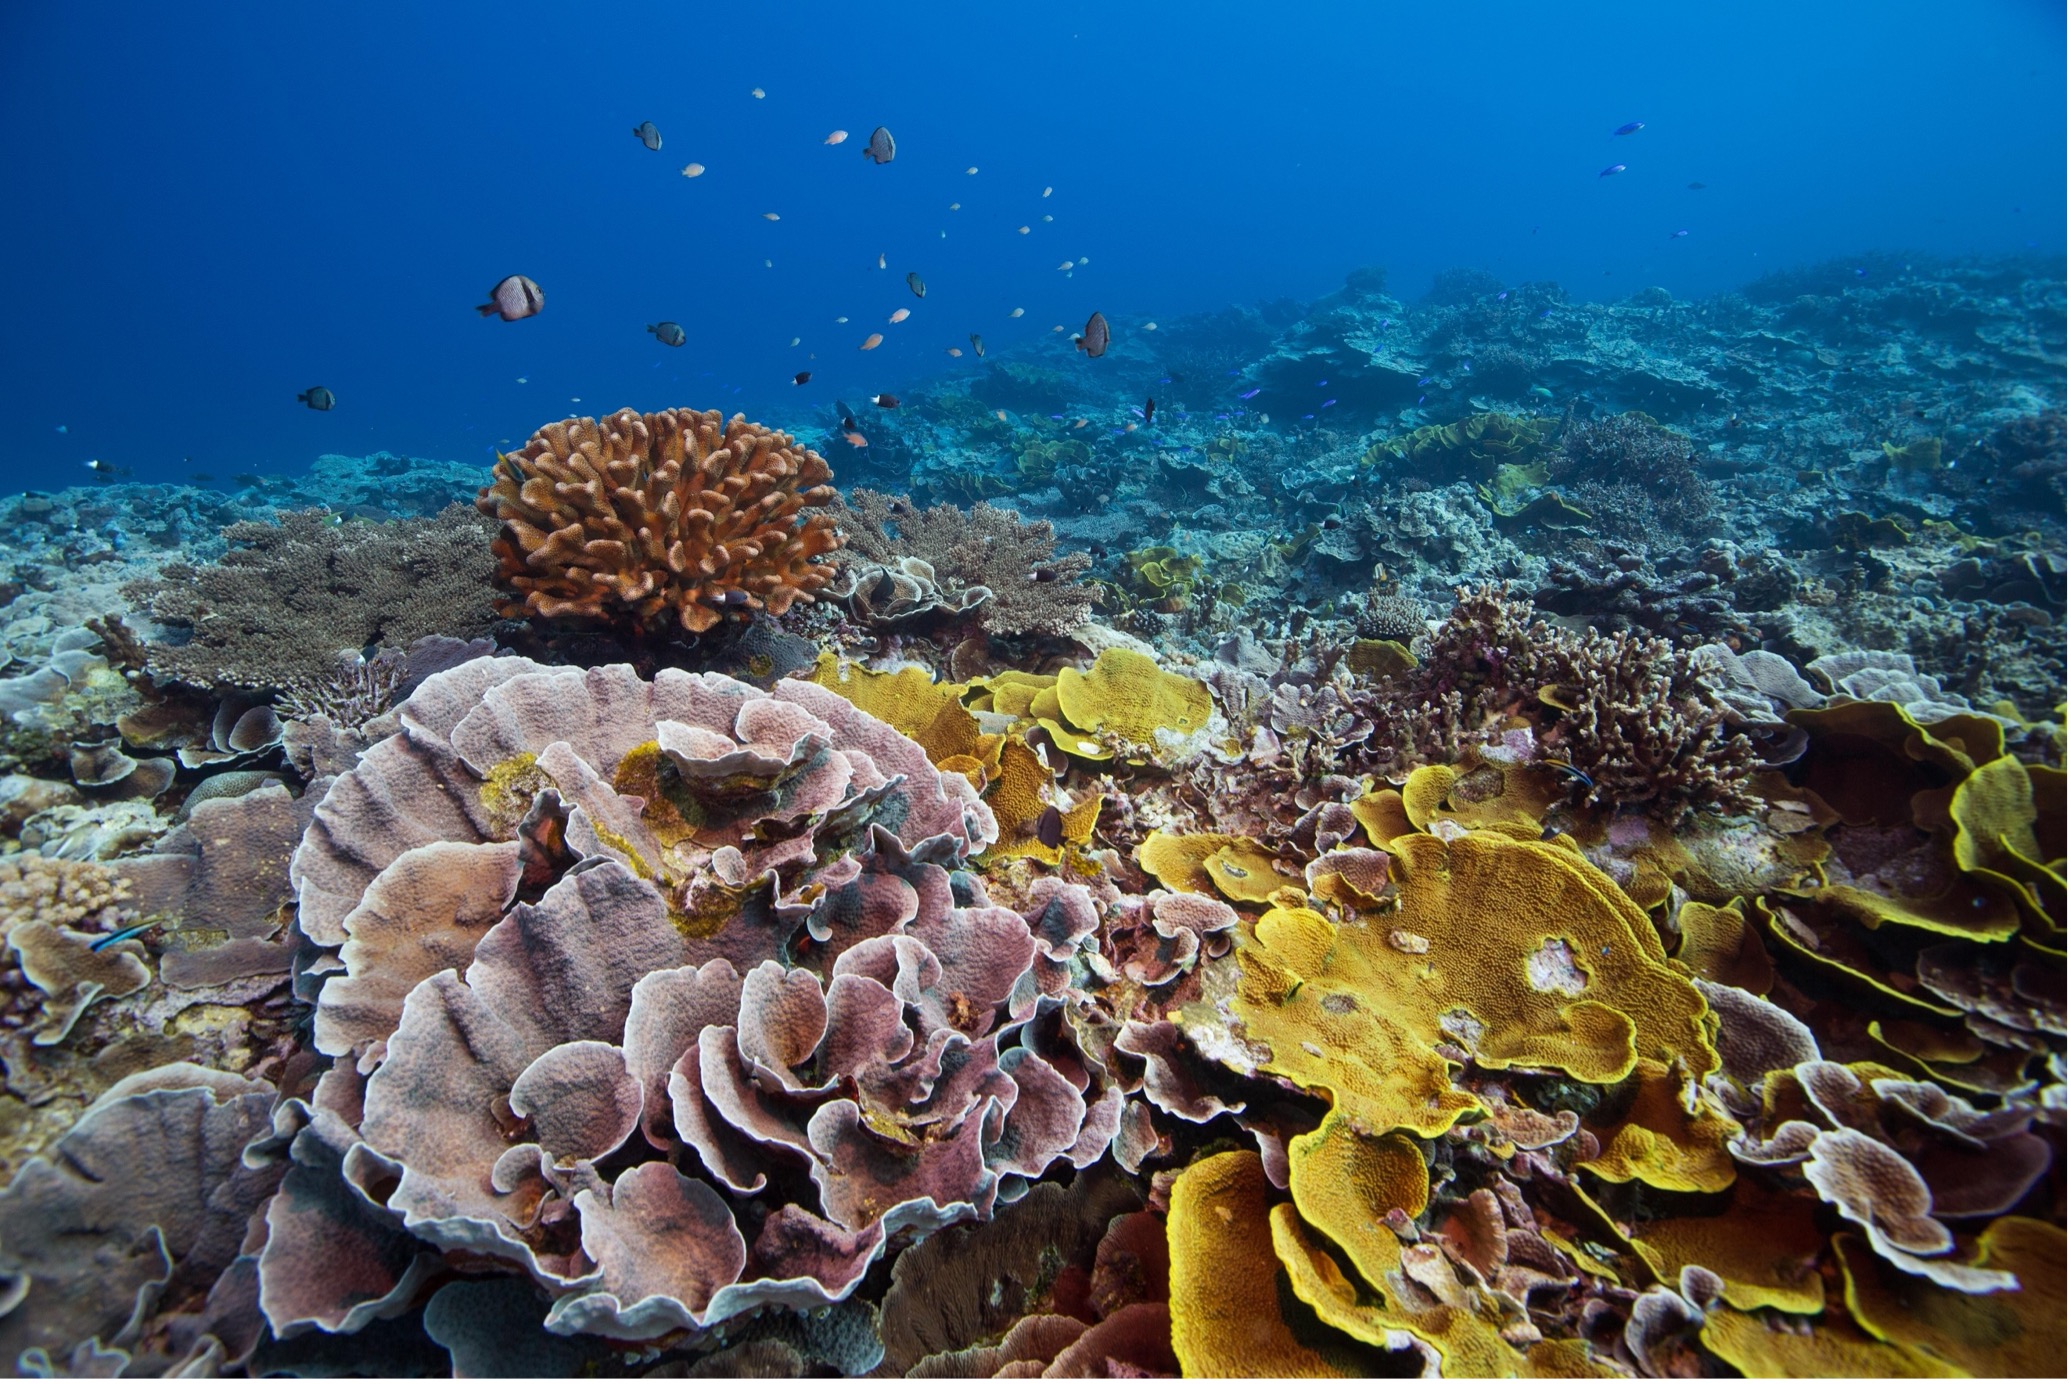 شعاب مرجانية متنوعة ومرنة في ياب ، ميكرونيزيا. بواسطة تيم كالفير.